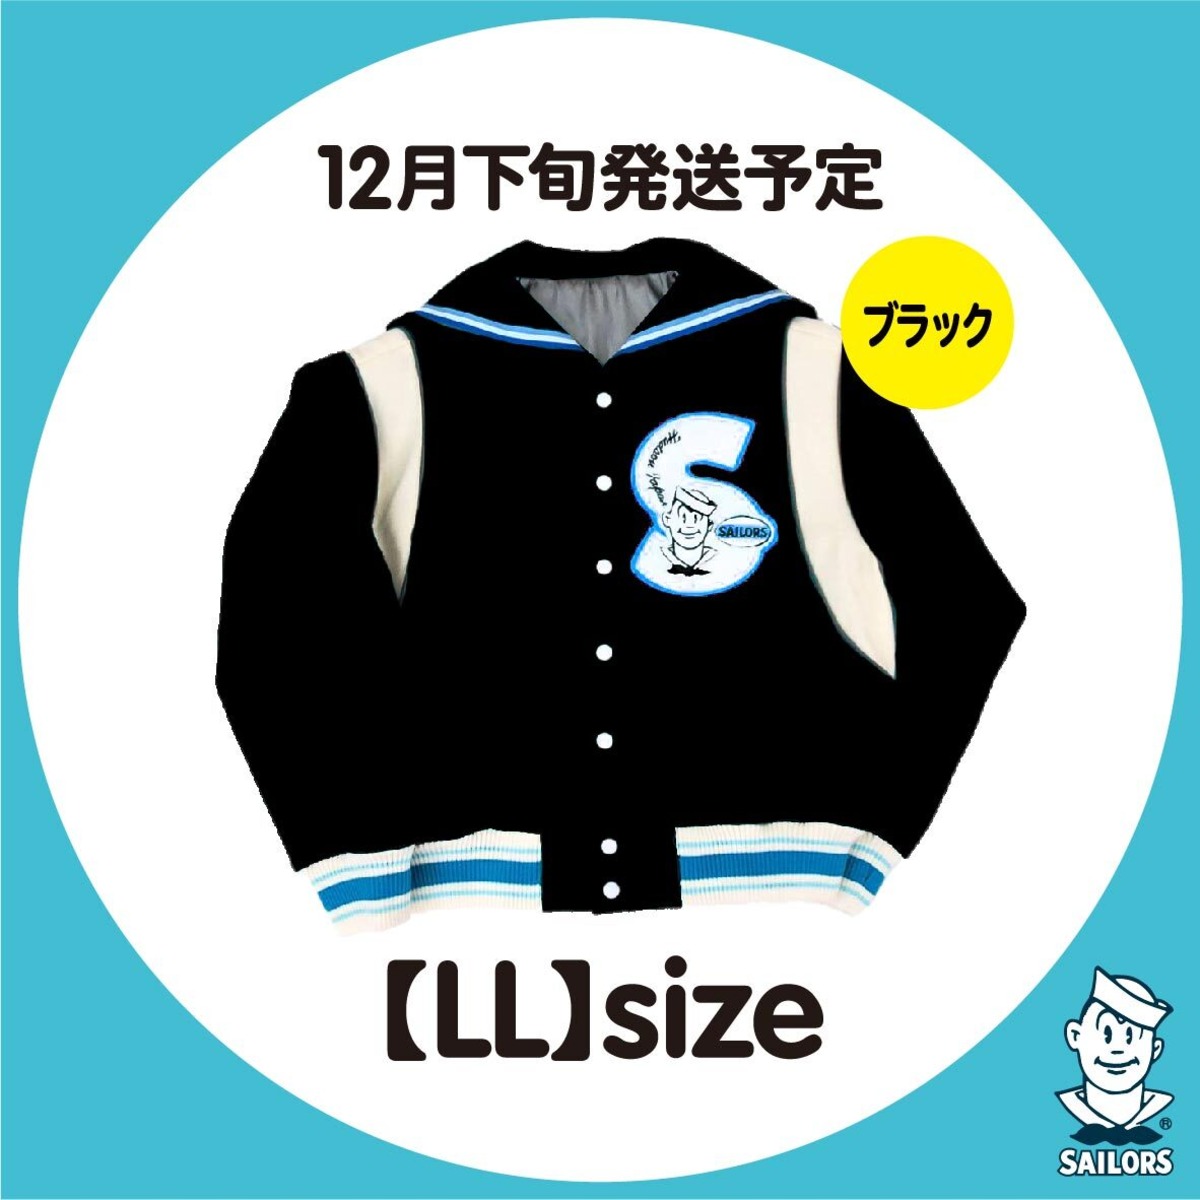 【数量限定】セーラーカラースタジャン 黒×【LL】size | セーラーズsailors